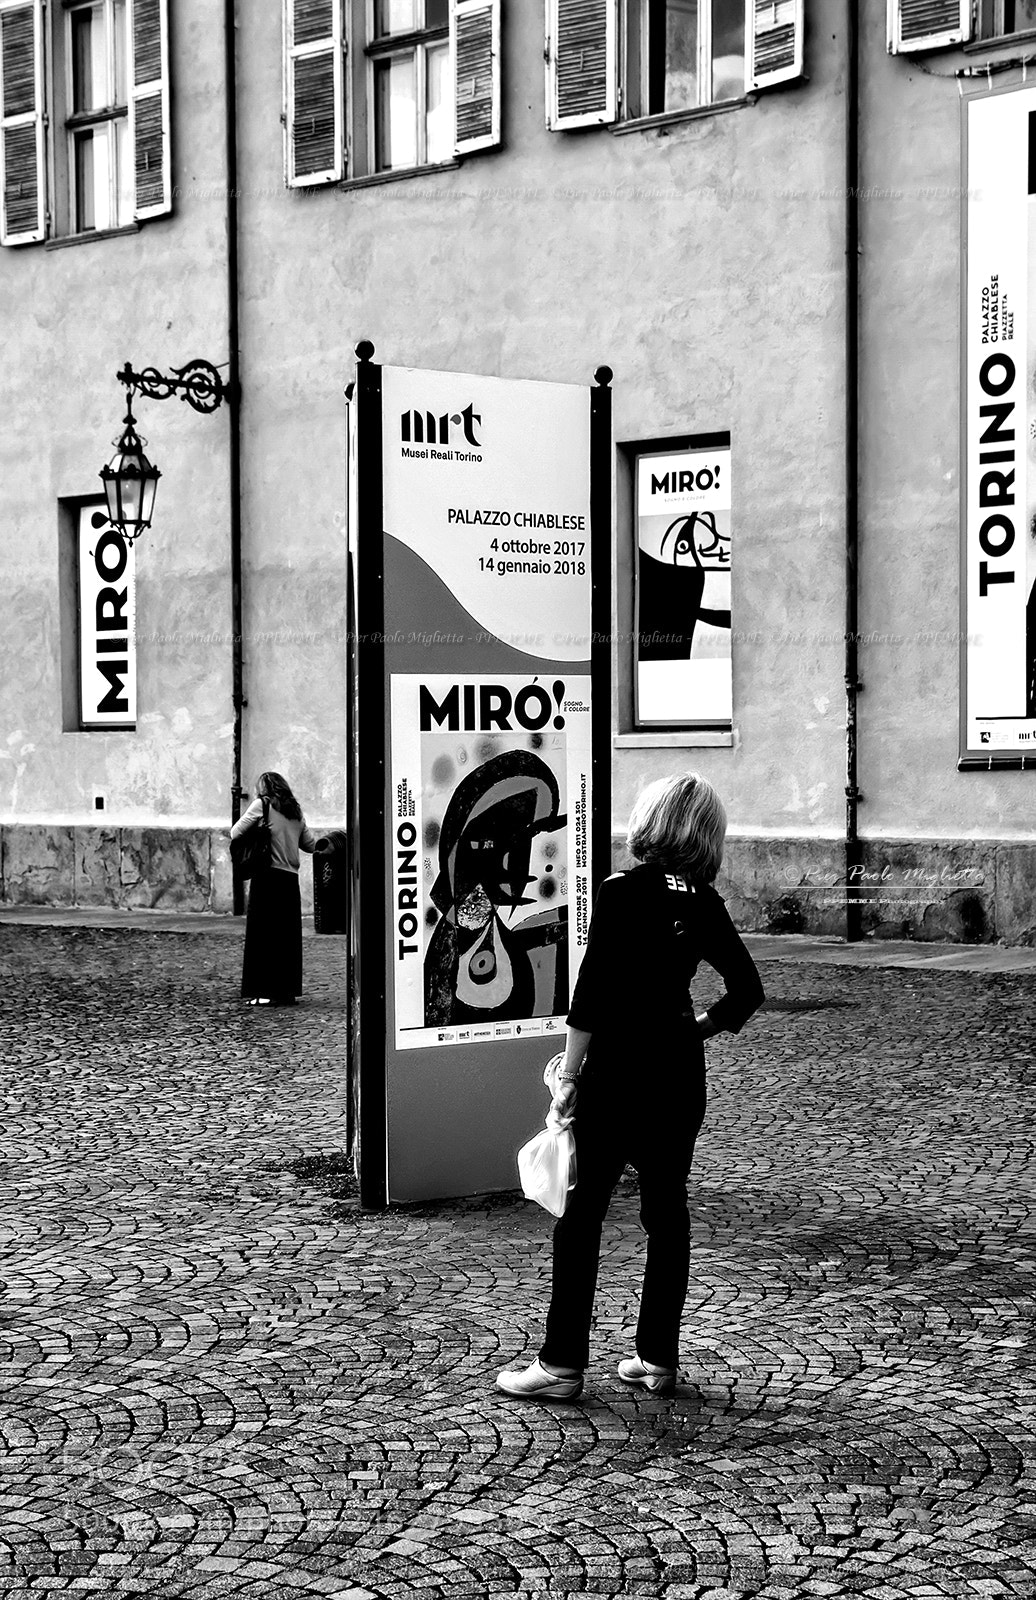 Nikon D90 sample photo. Miró photography